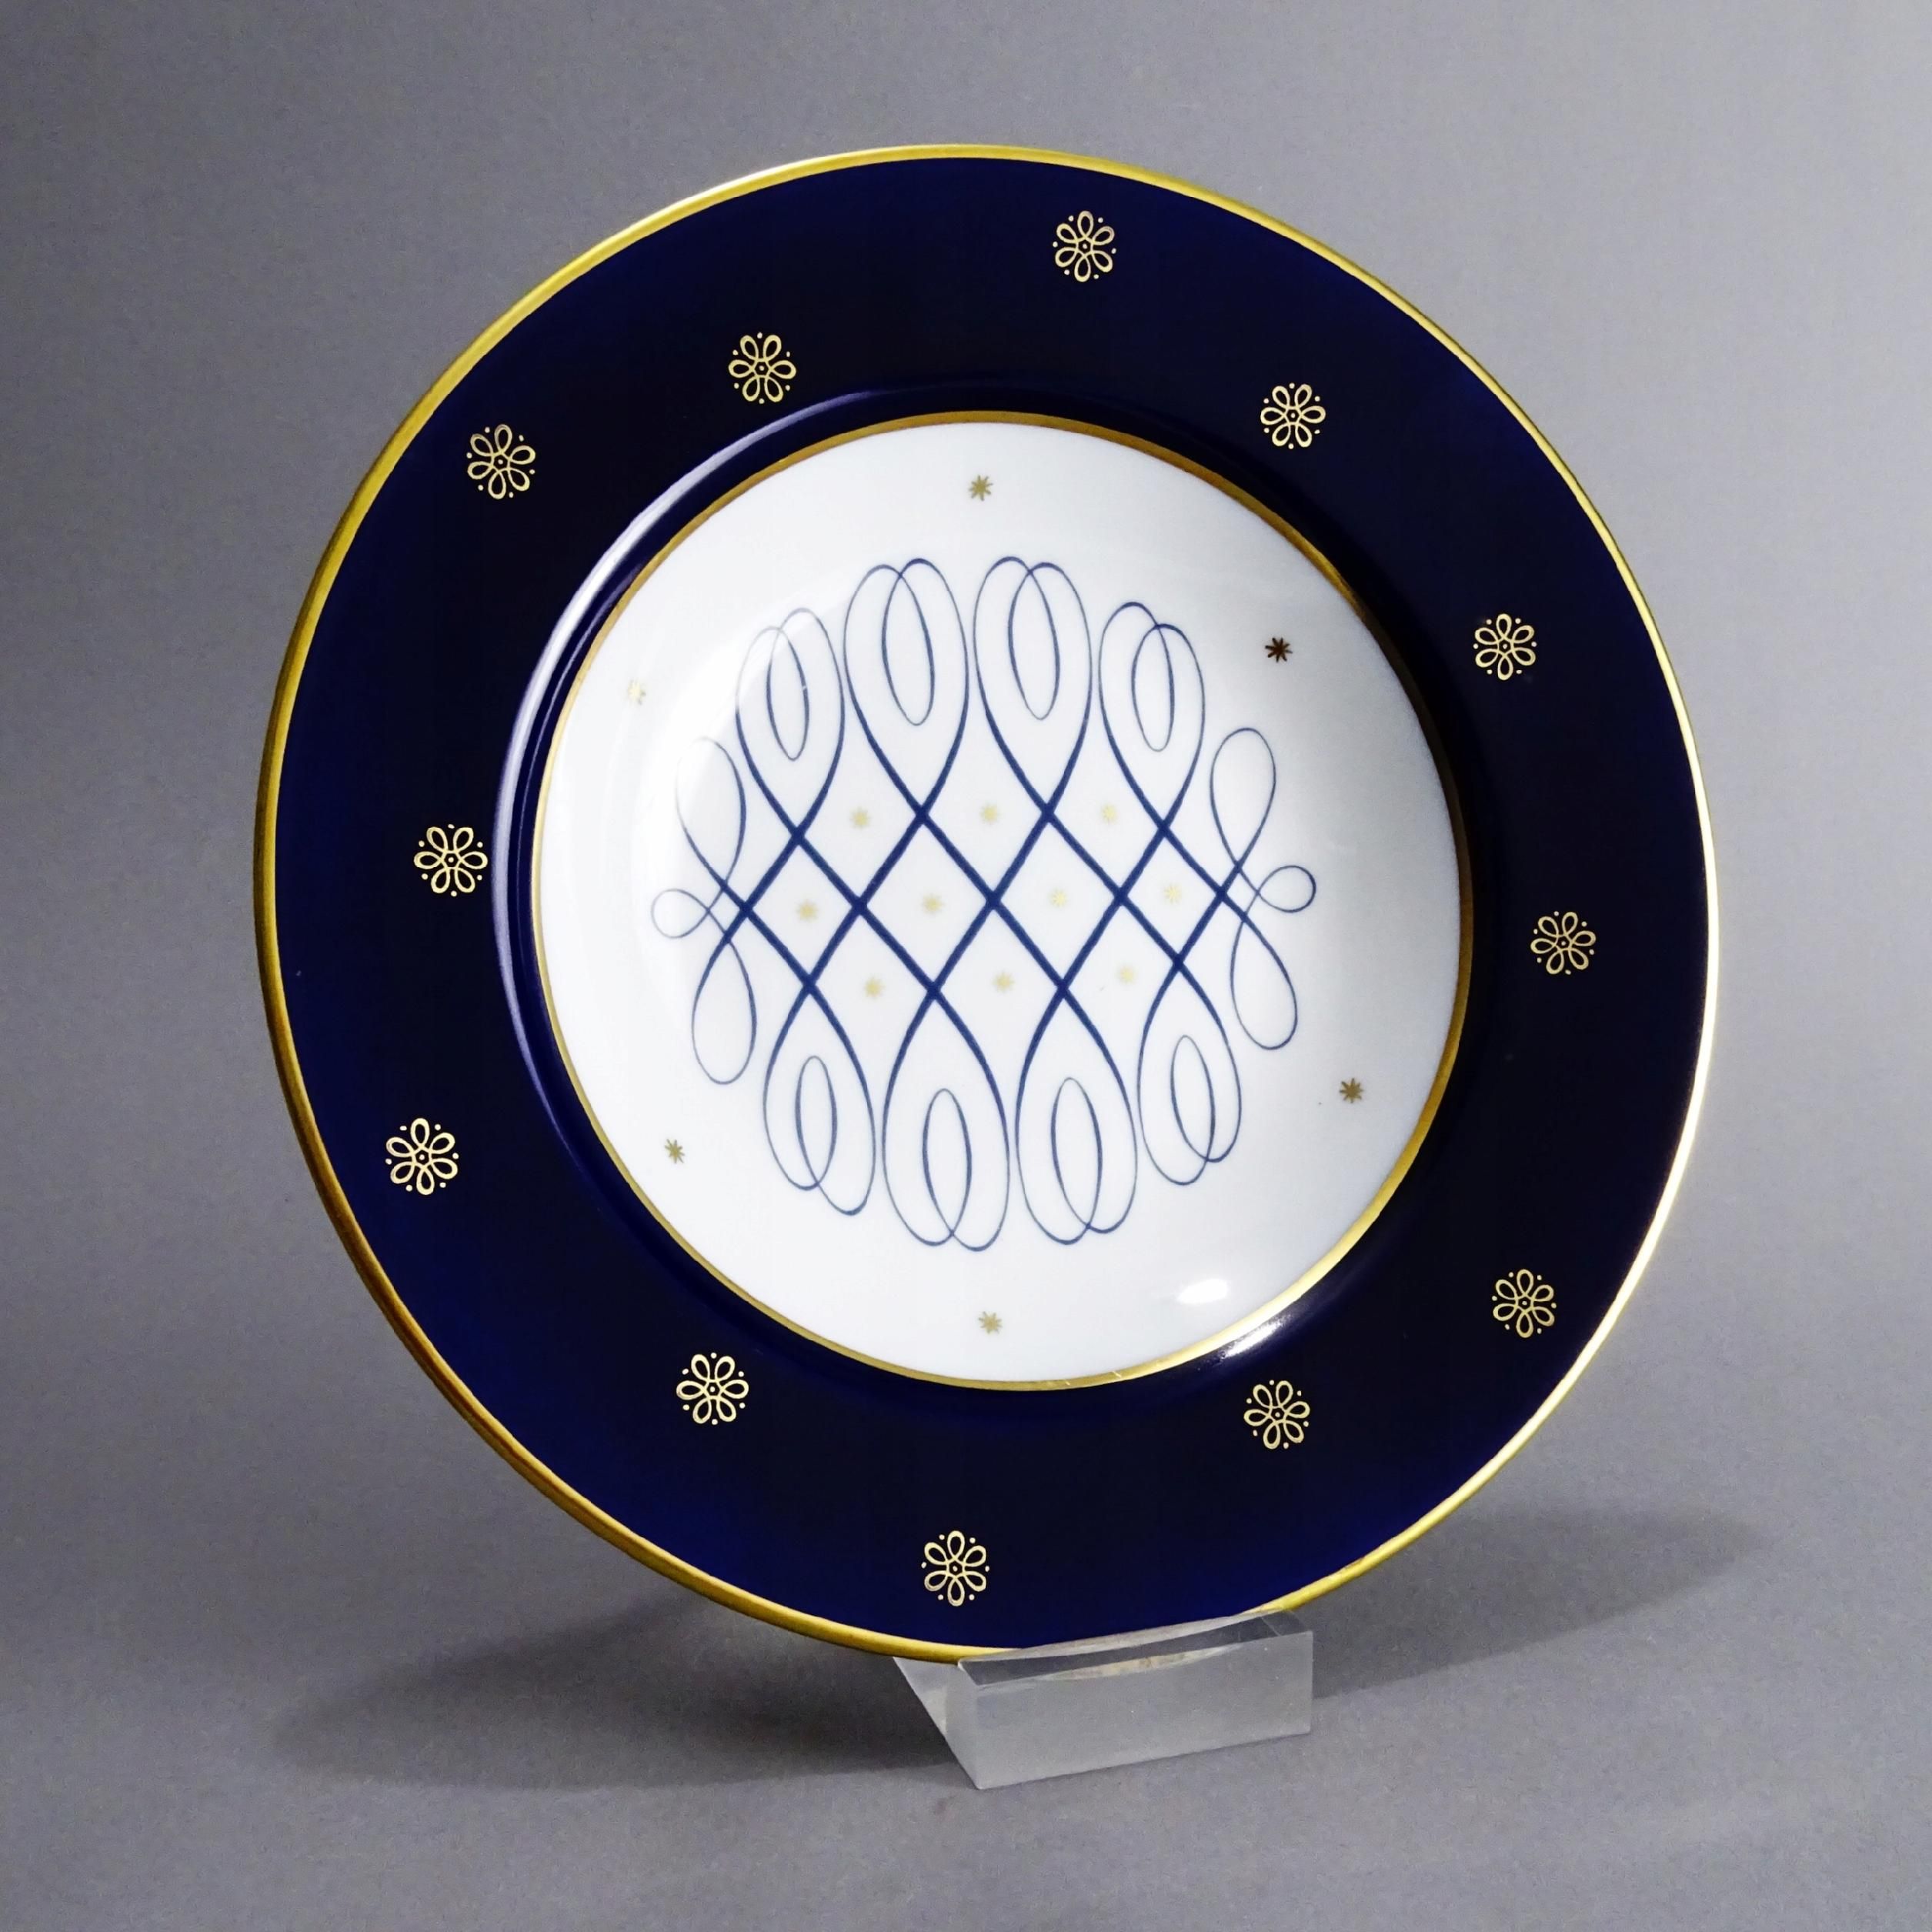 henneberg lata 60/70 piękny ozodbny talerz porcelanowy